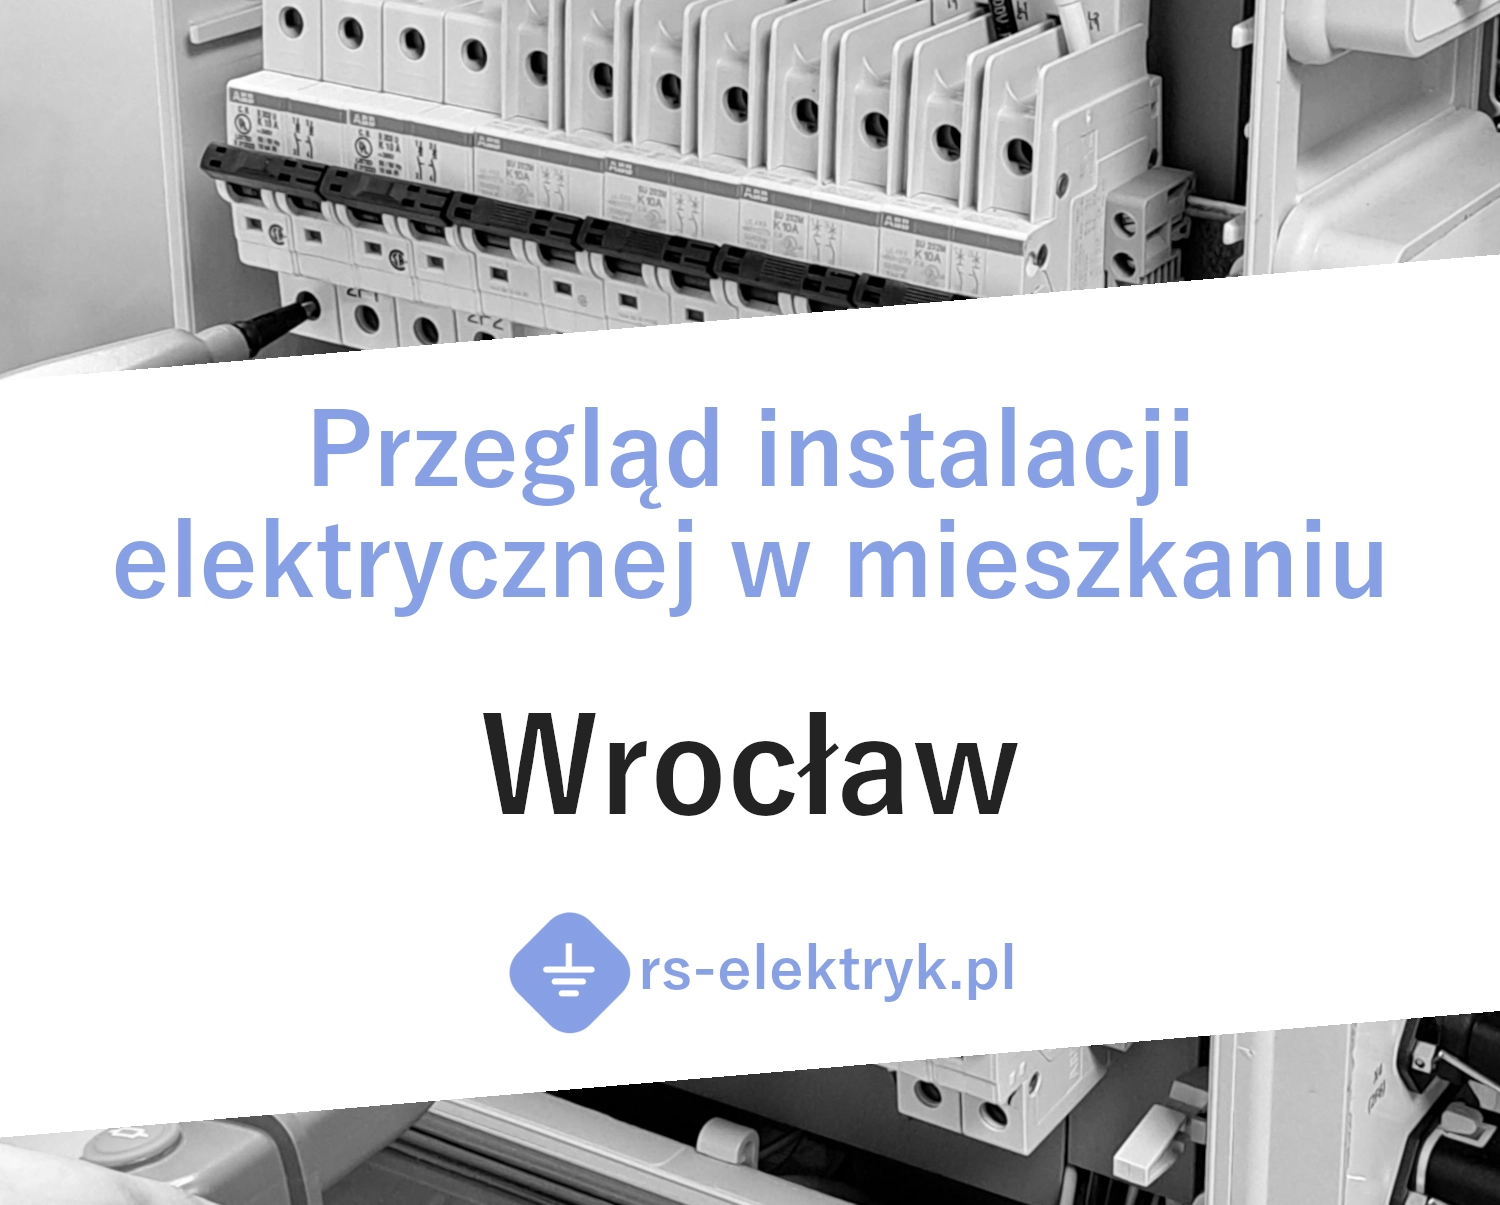 Przegląd instalacji elektrycznej w mieszkaniu Wrocław